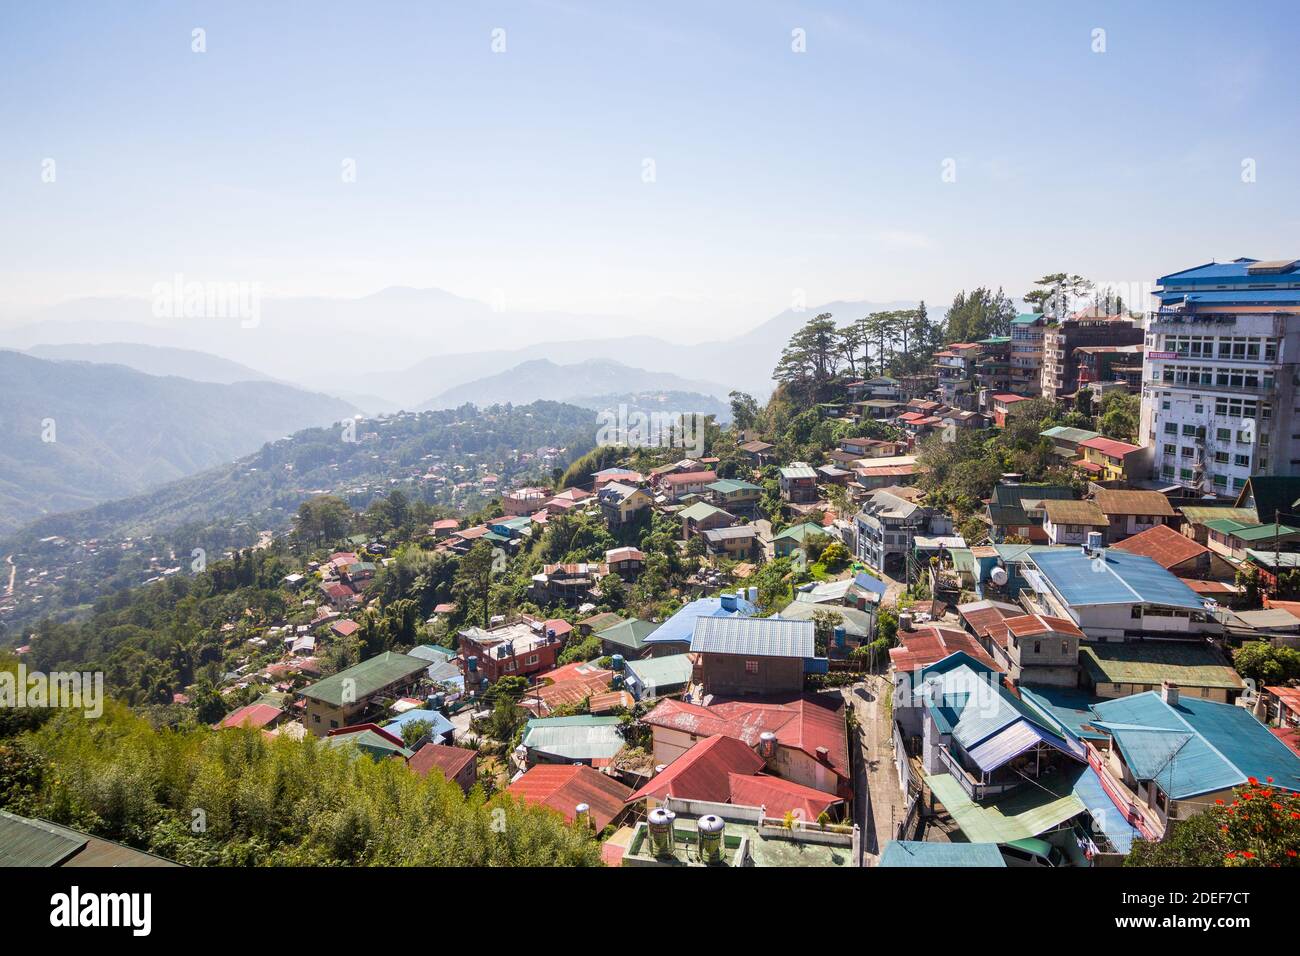 Maisons et bâtiments dans la ville montagneuse de Baguio, Philippines Banque D'Images